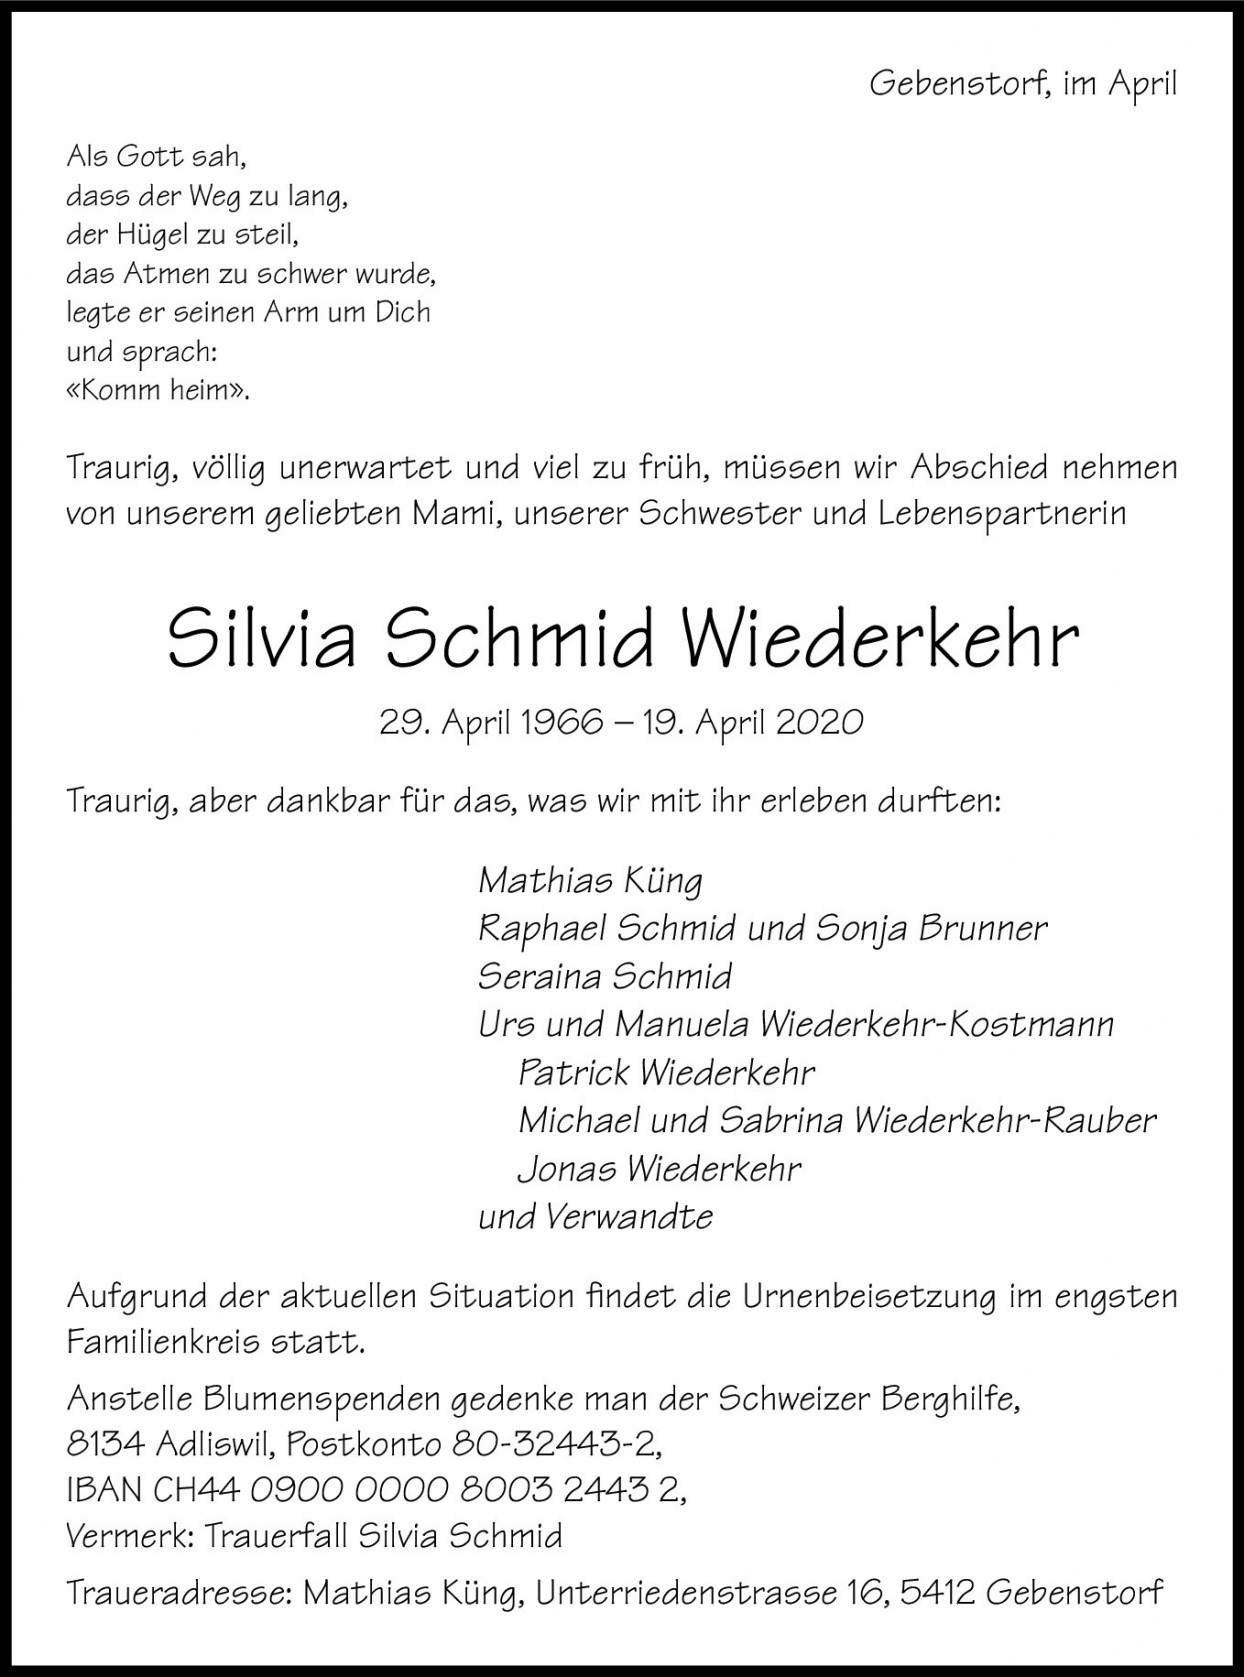 Silvia Schmid-Wiederkehr